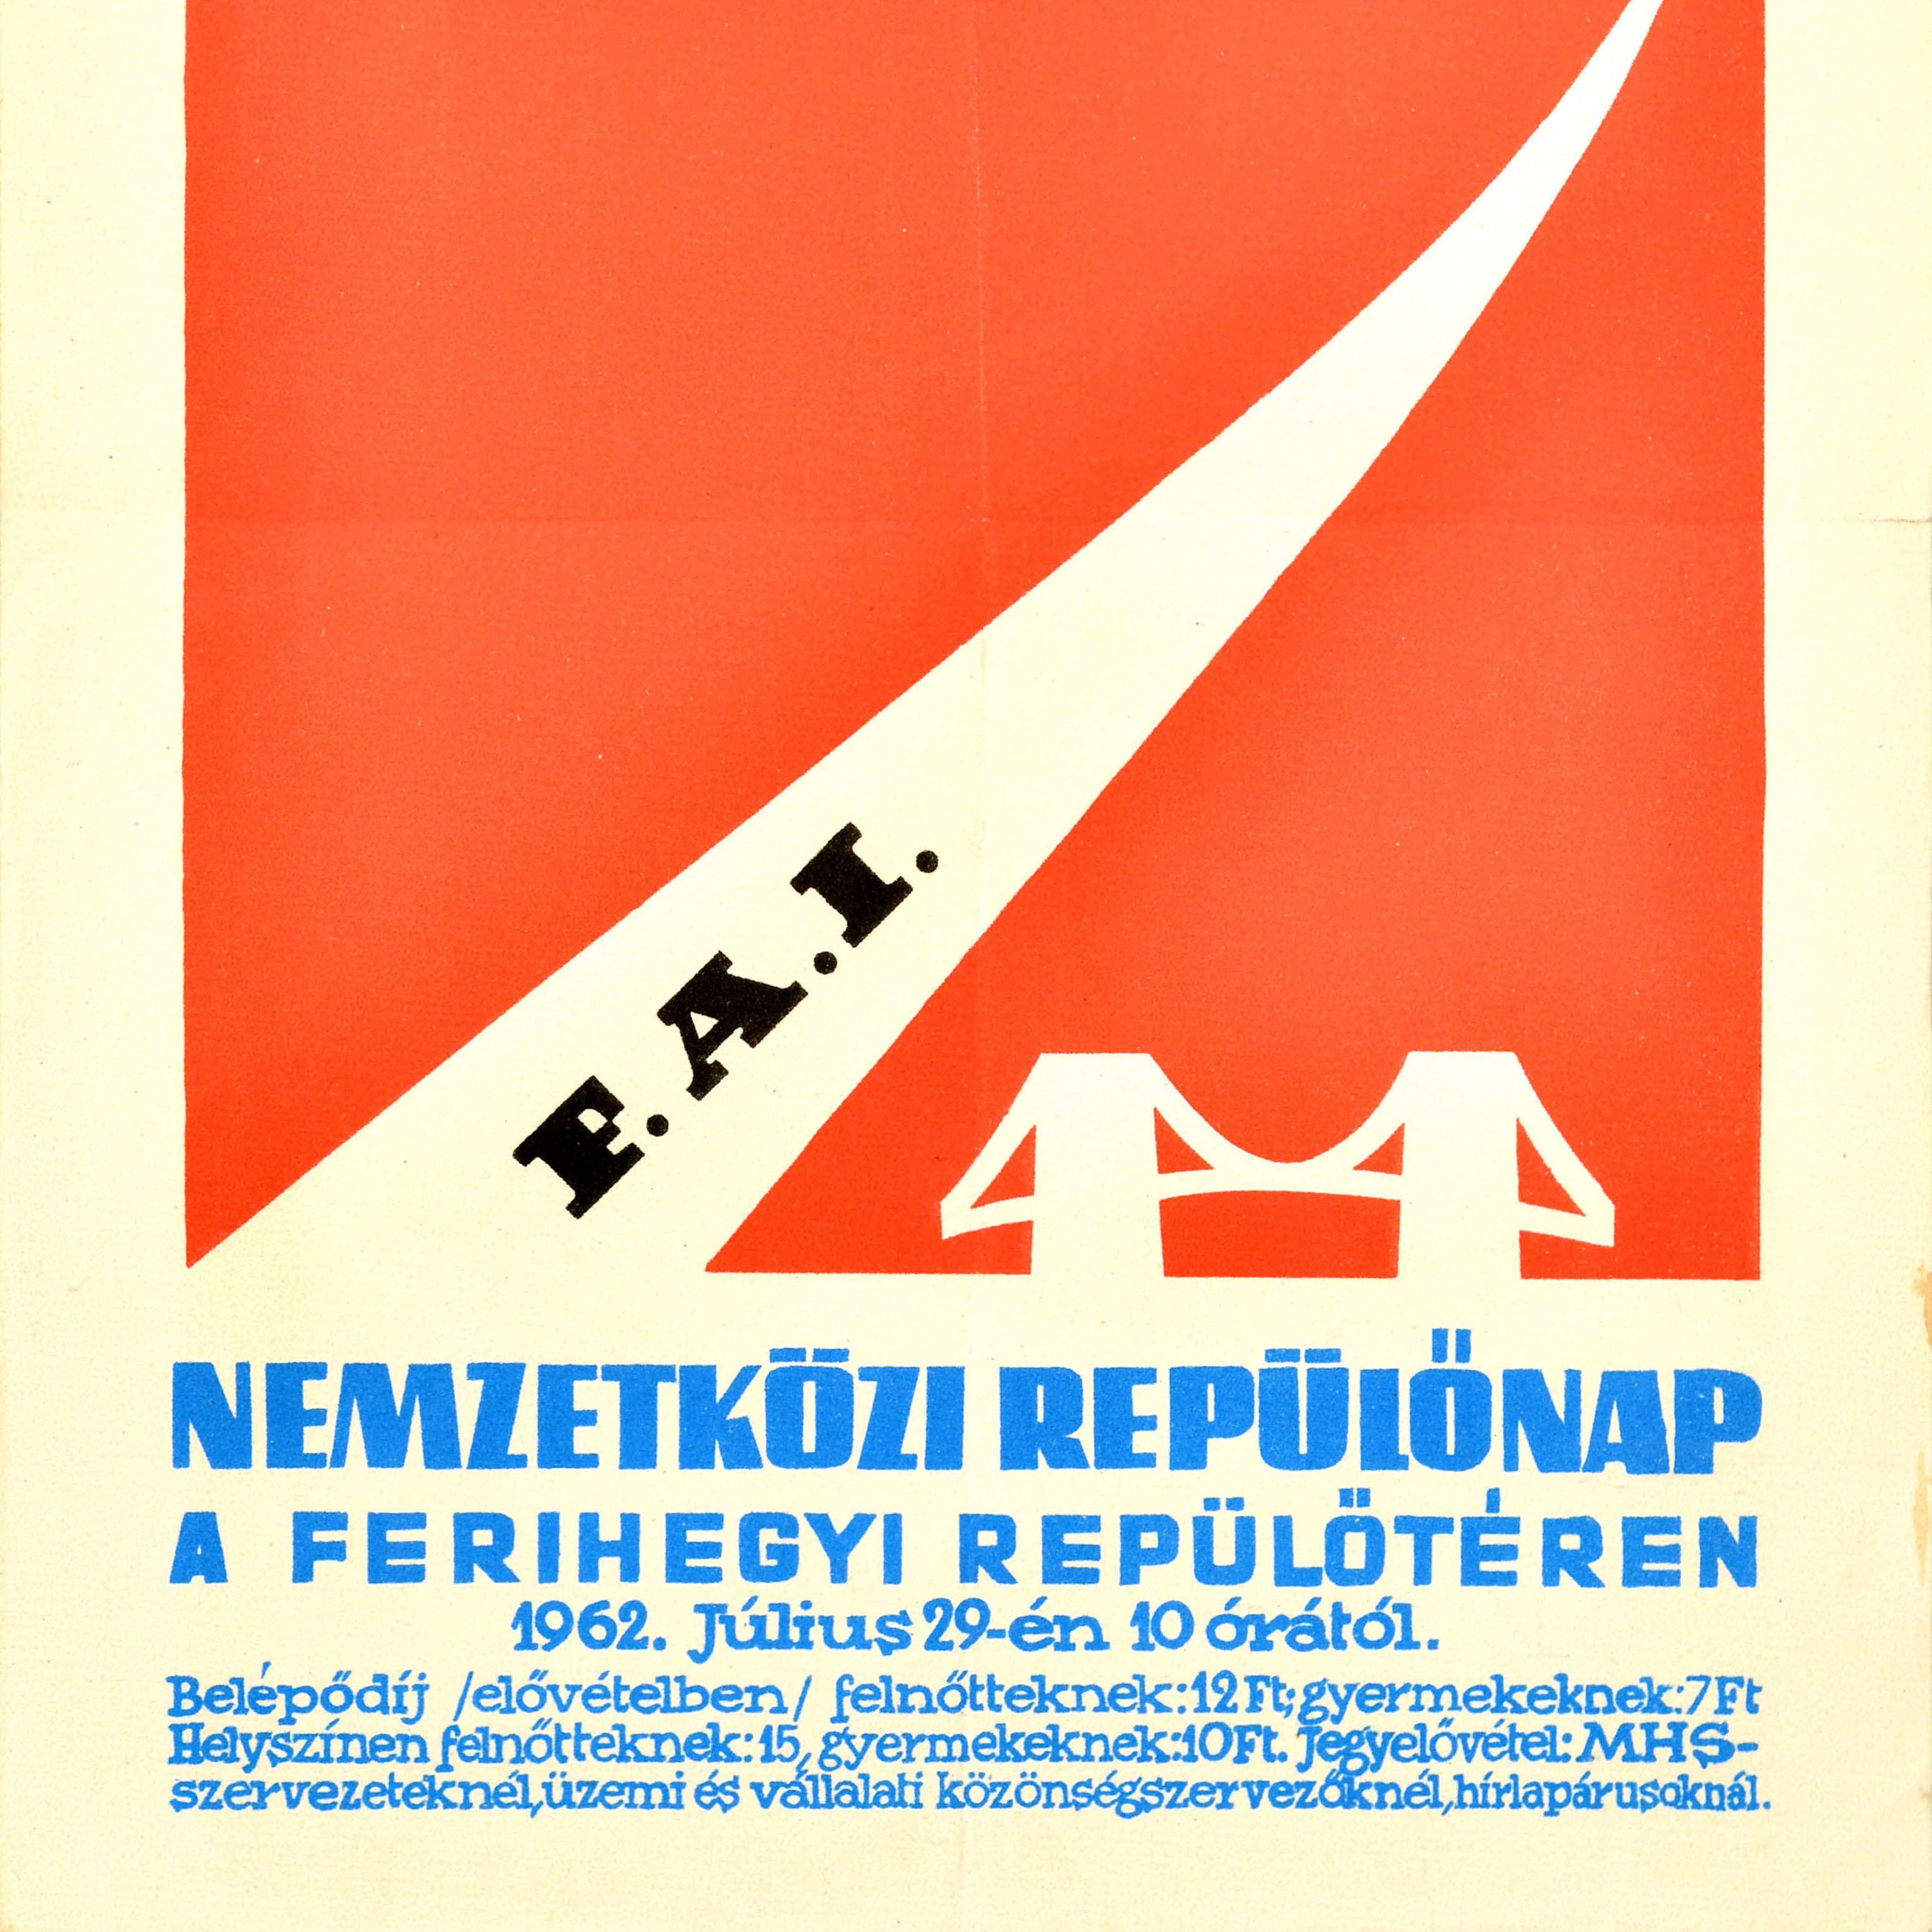 Original-Werbeplakat für die Internationale Luftfahrtausstellung in Kecskemet / FAI Nemzetkozi Repulonap a Ferihegyi Repuloteren am 29. Juli 1962 mit einer farbenfrohen Grafik, die ein Propellerflugzeug zeigt, das in einer Kurve über einer Brücke